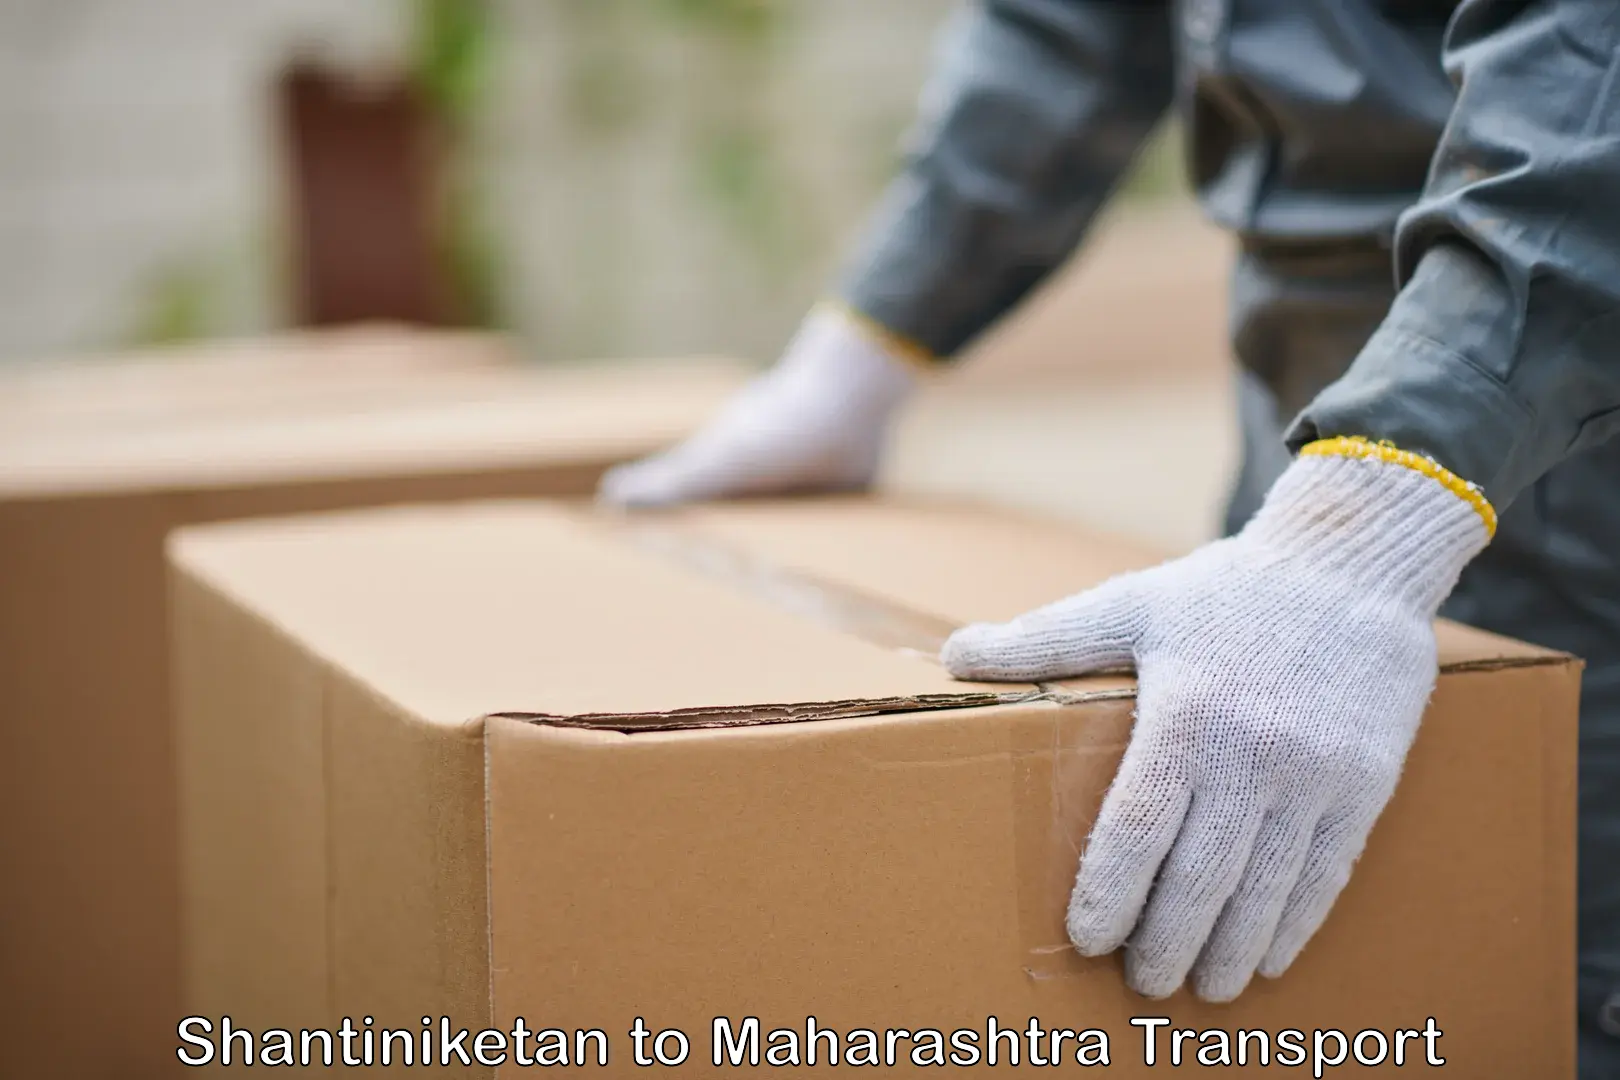 Furniture transport service Shantiniketan to Maharashtra